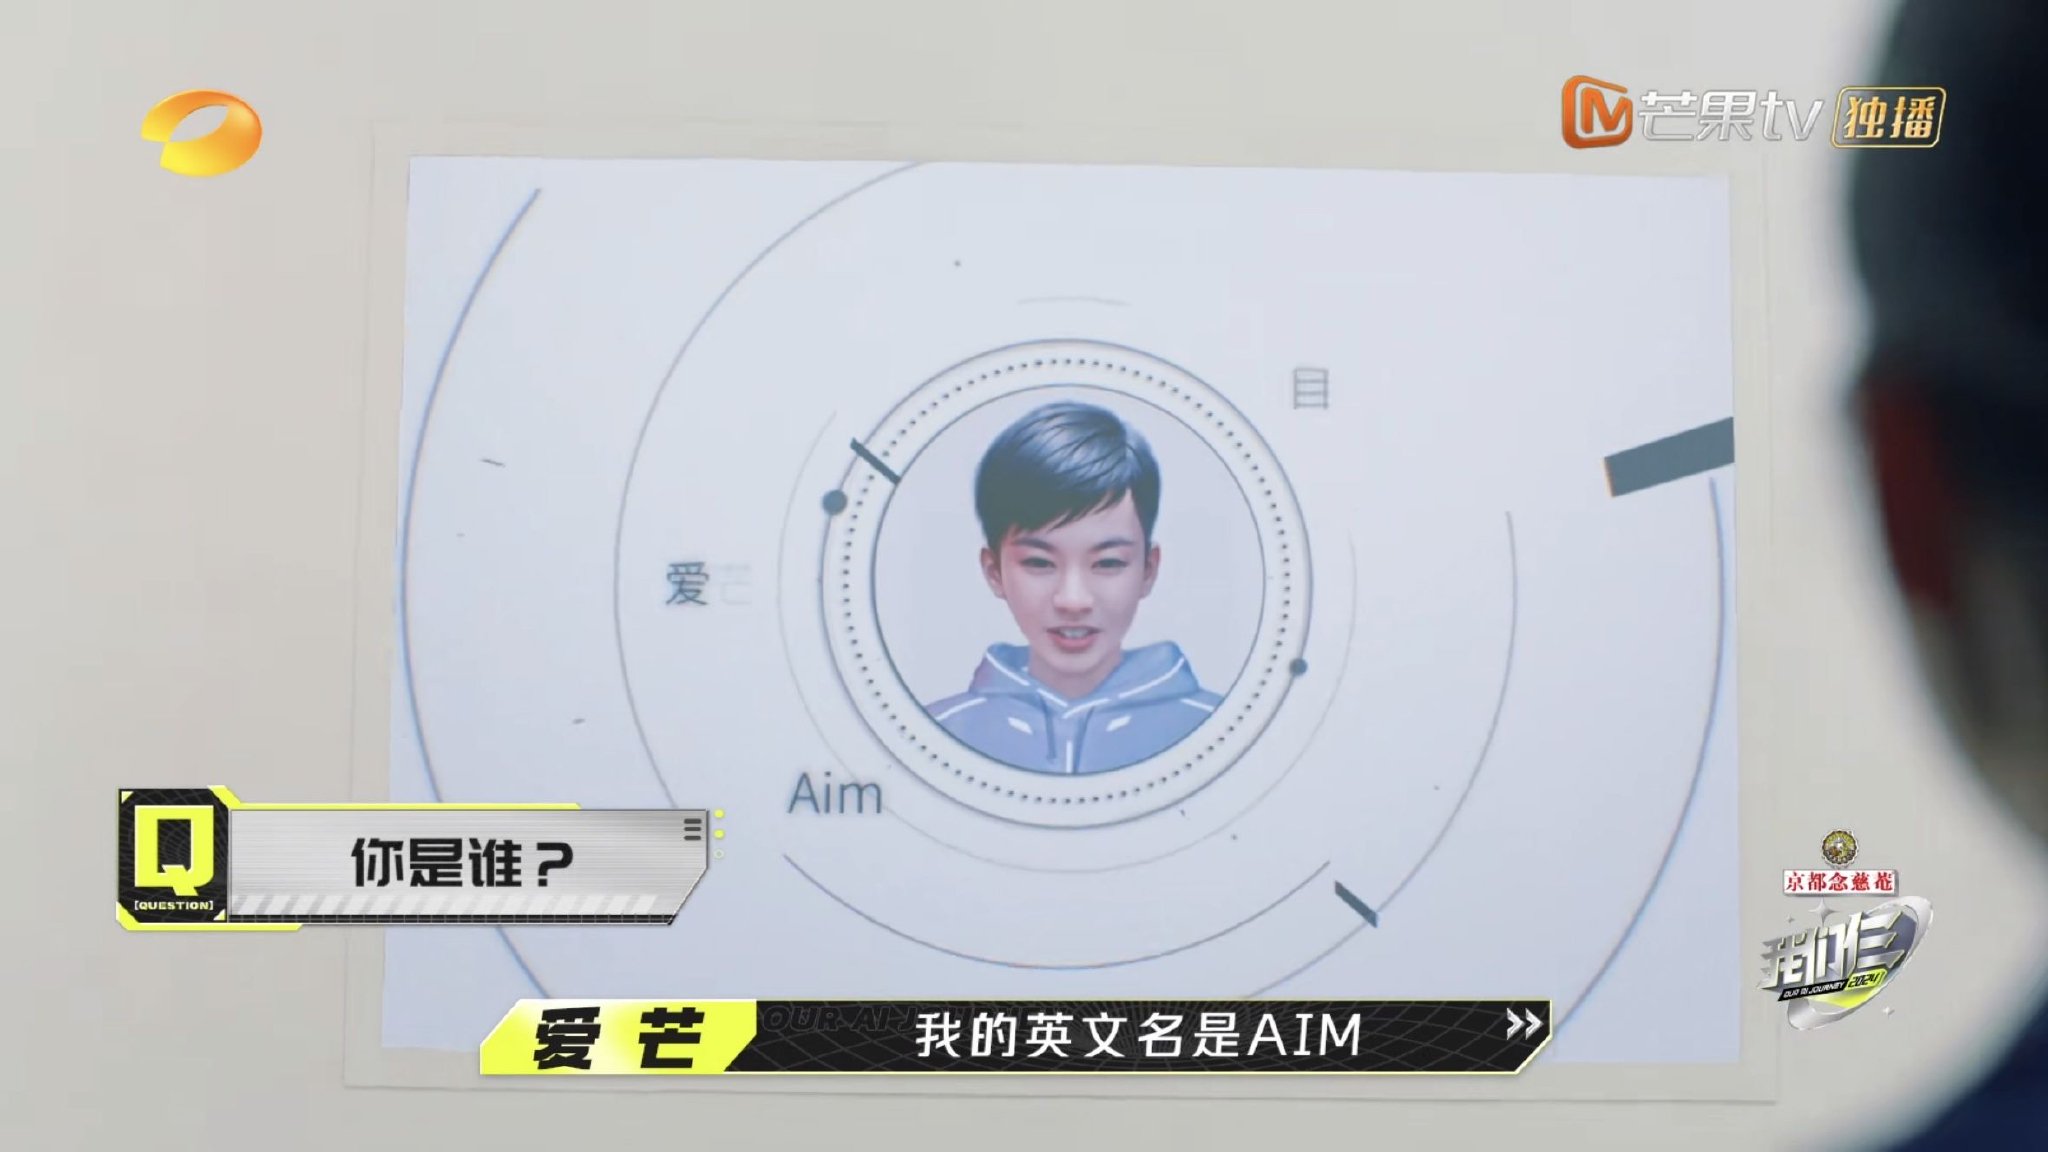 湖南卫视与芒果TV双平台AI导演爱芒在综艺《我们仨》中首秀。图/芒果TV截图